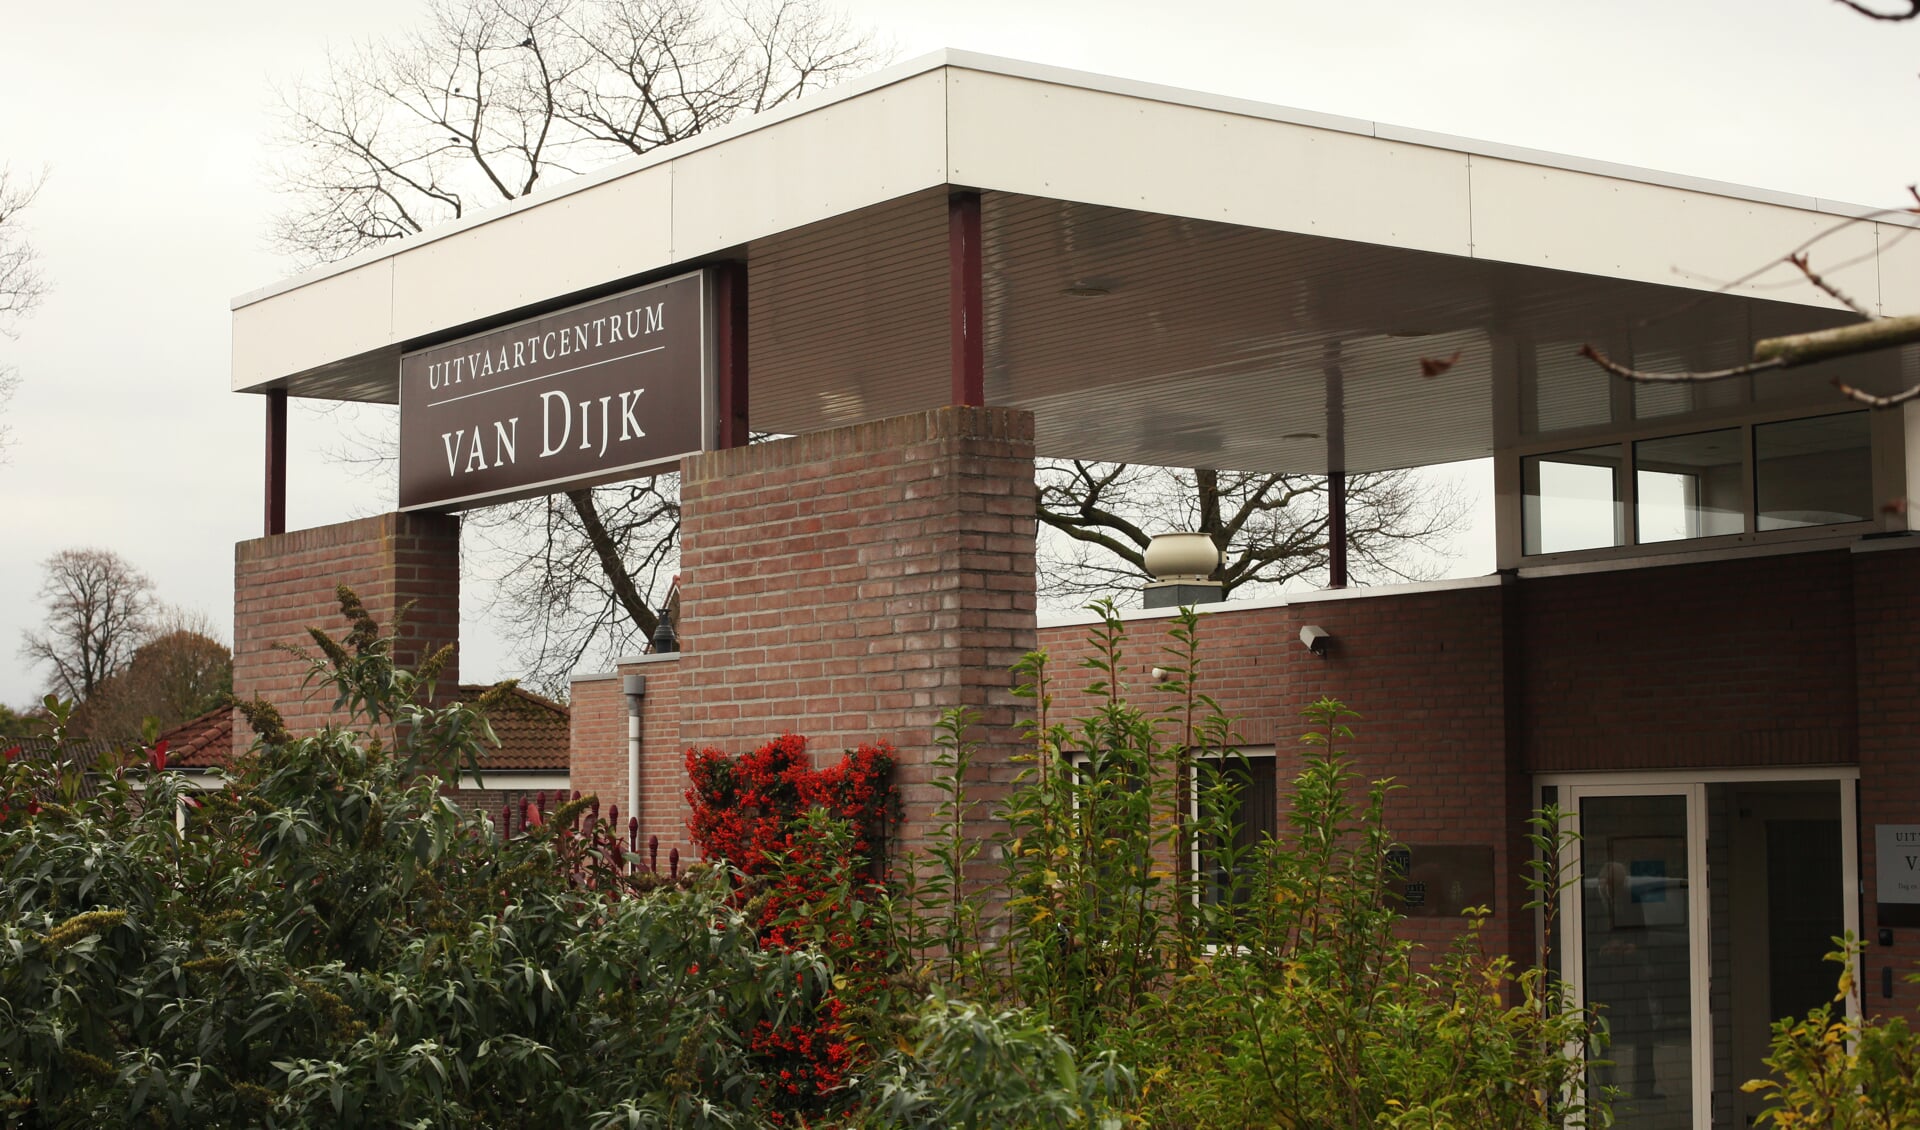 Uitvaartcentrum Van Dijk houdt zondag 12 maart een open dag.